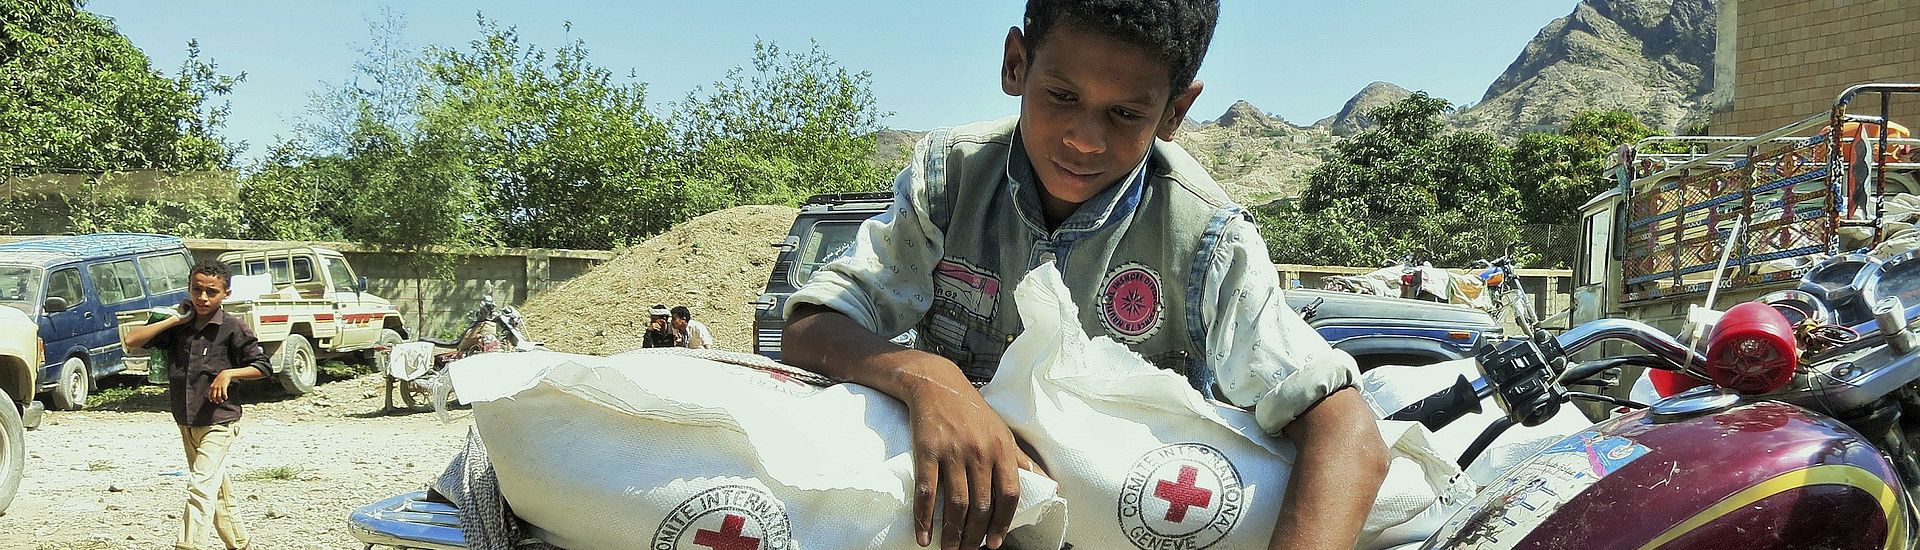 Humanitarian aid in crisis-stricken Yemen